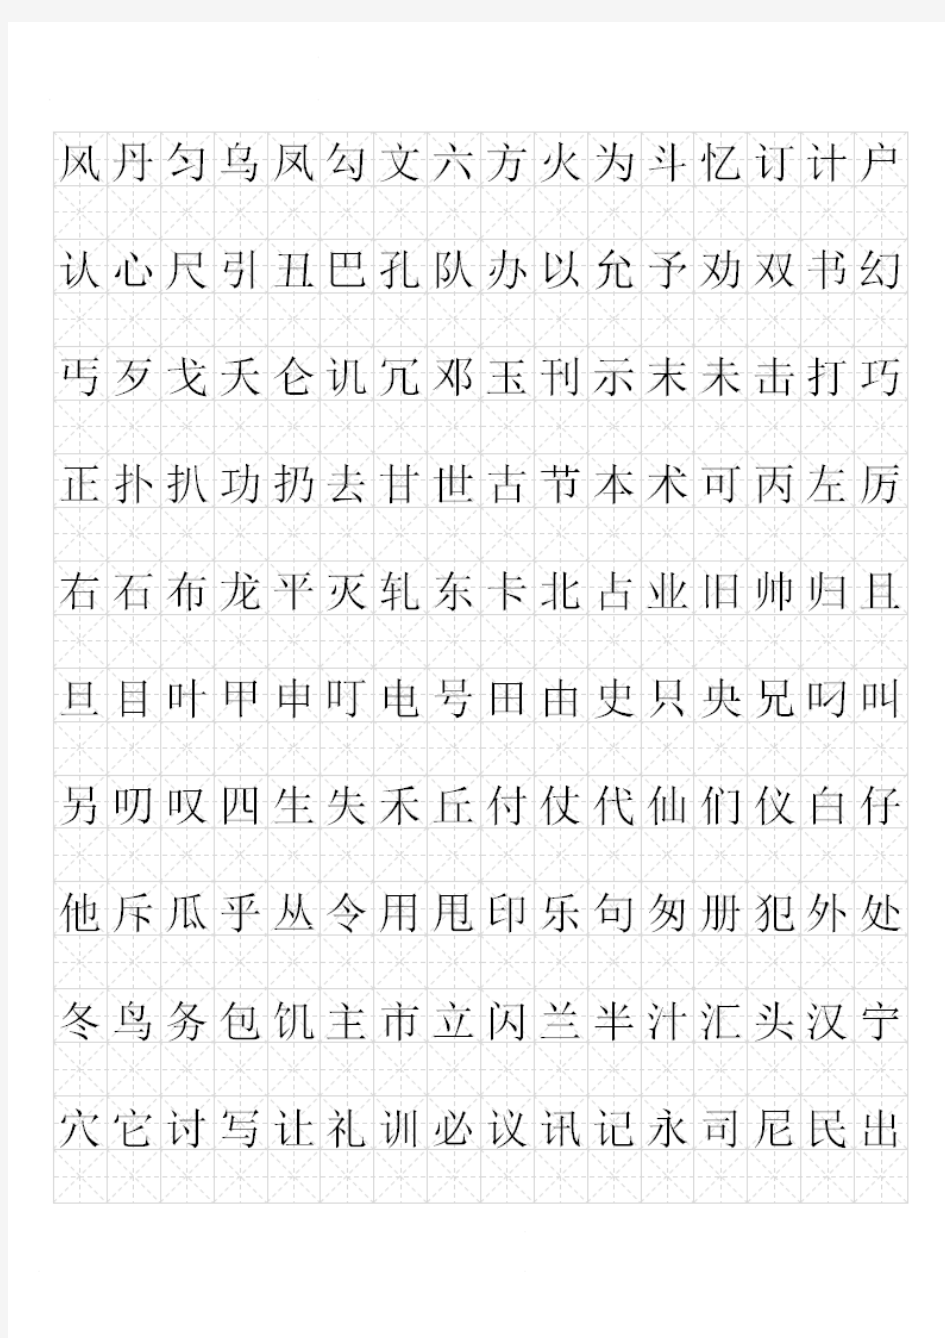 小学书法字帖素材-《现代汉语3500常用字》字帖-全国通用